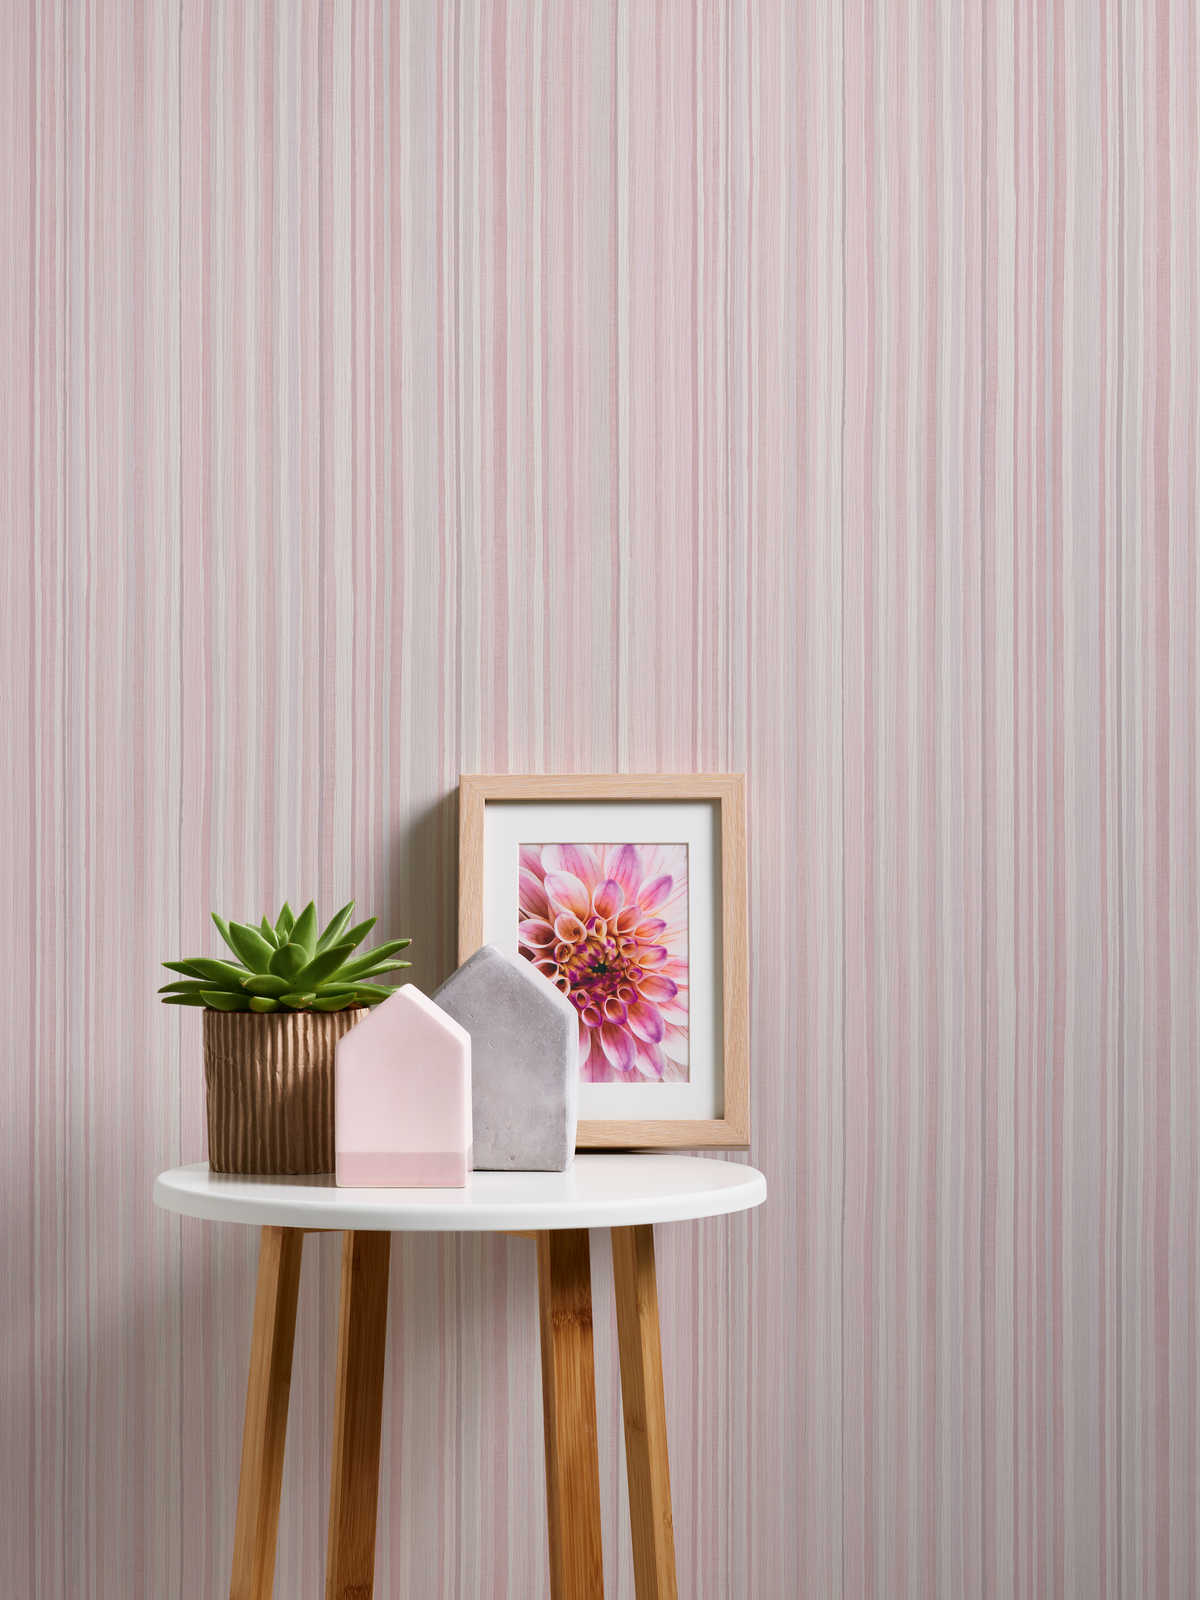             Gestreept behang met smal lijnenpatroon - roze, grijs
        